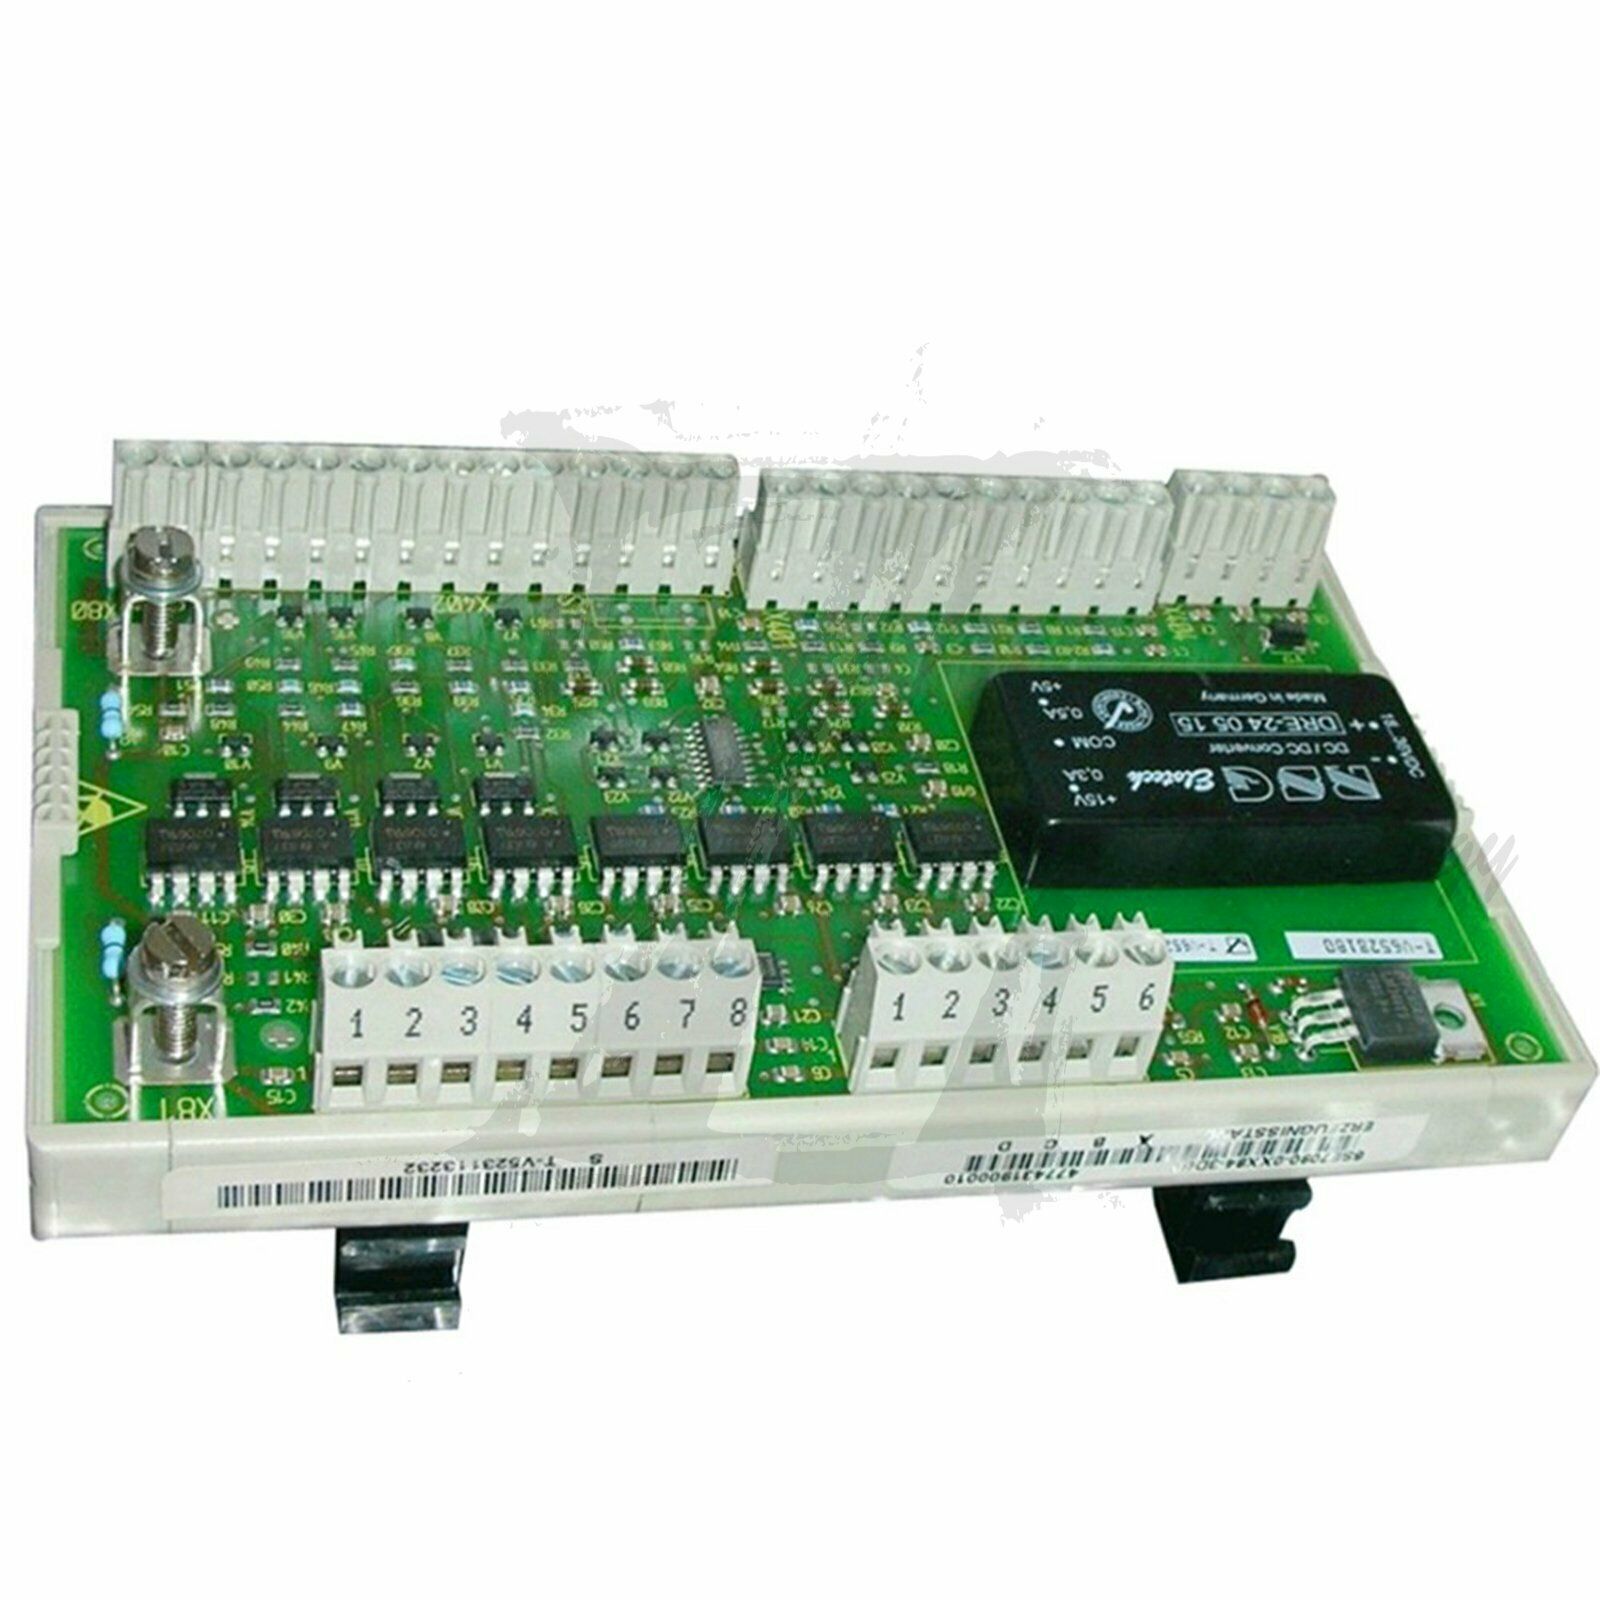 New Siemens interface board 6SE7090-0XX84-3DB0